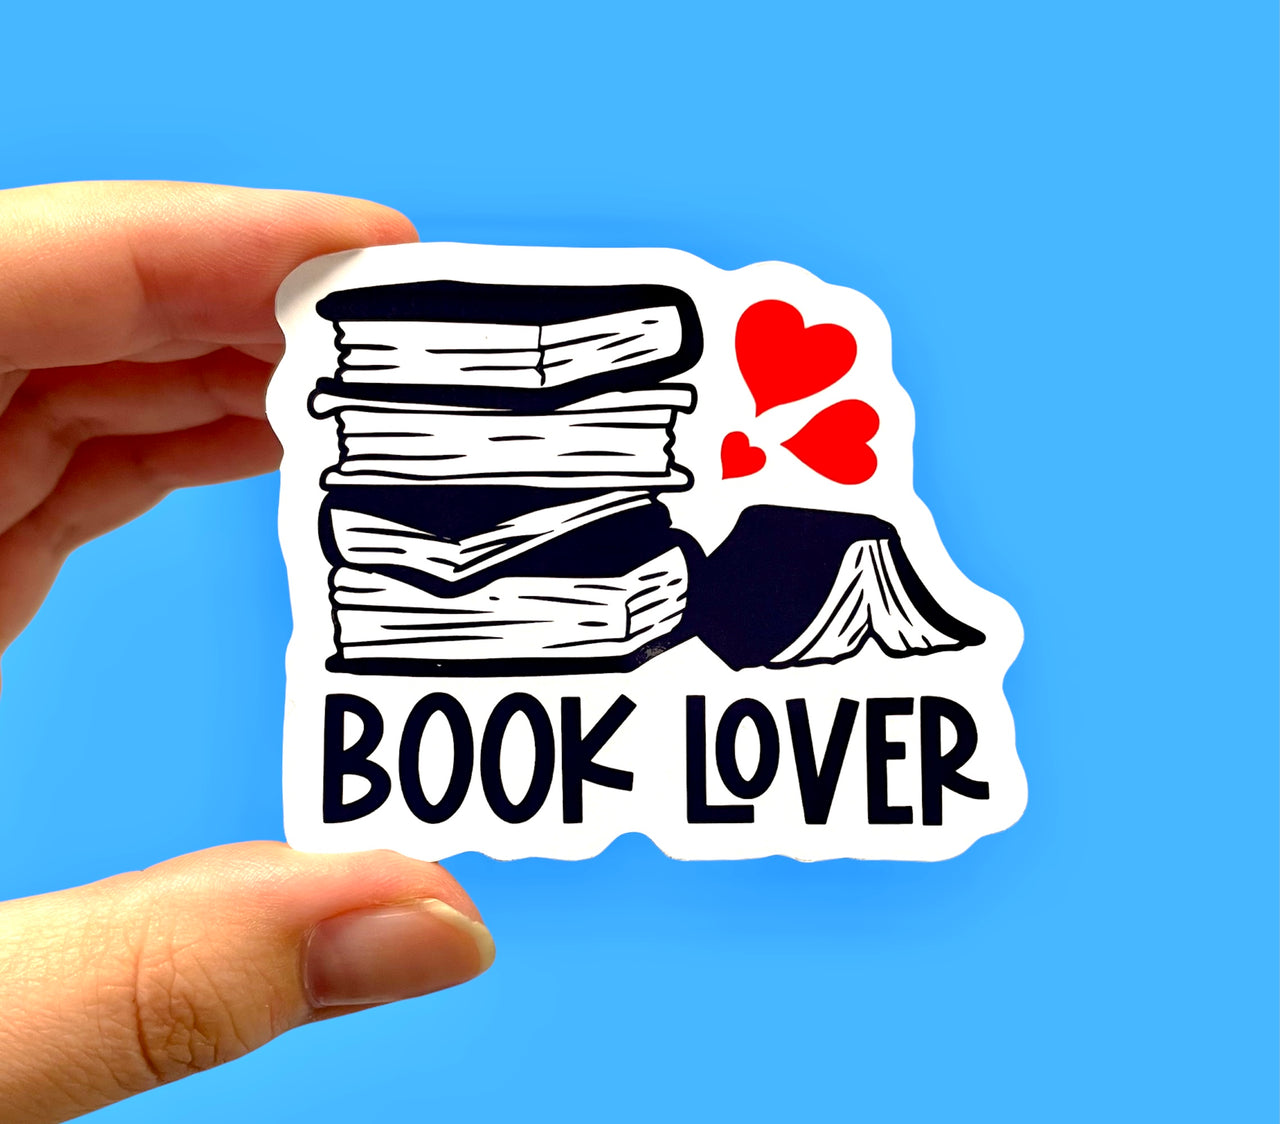 Book lover sticker